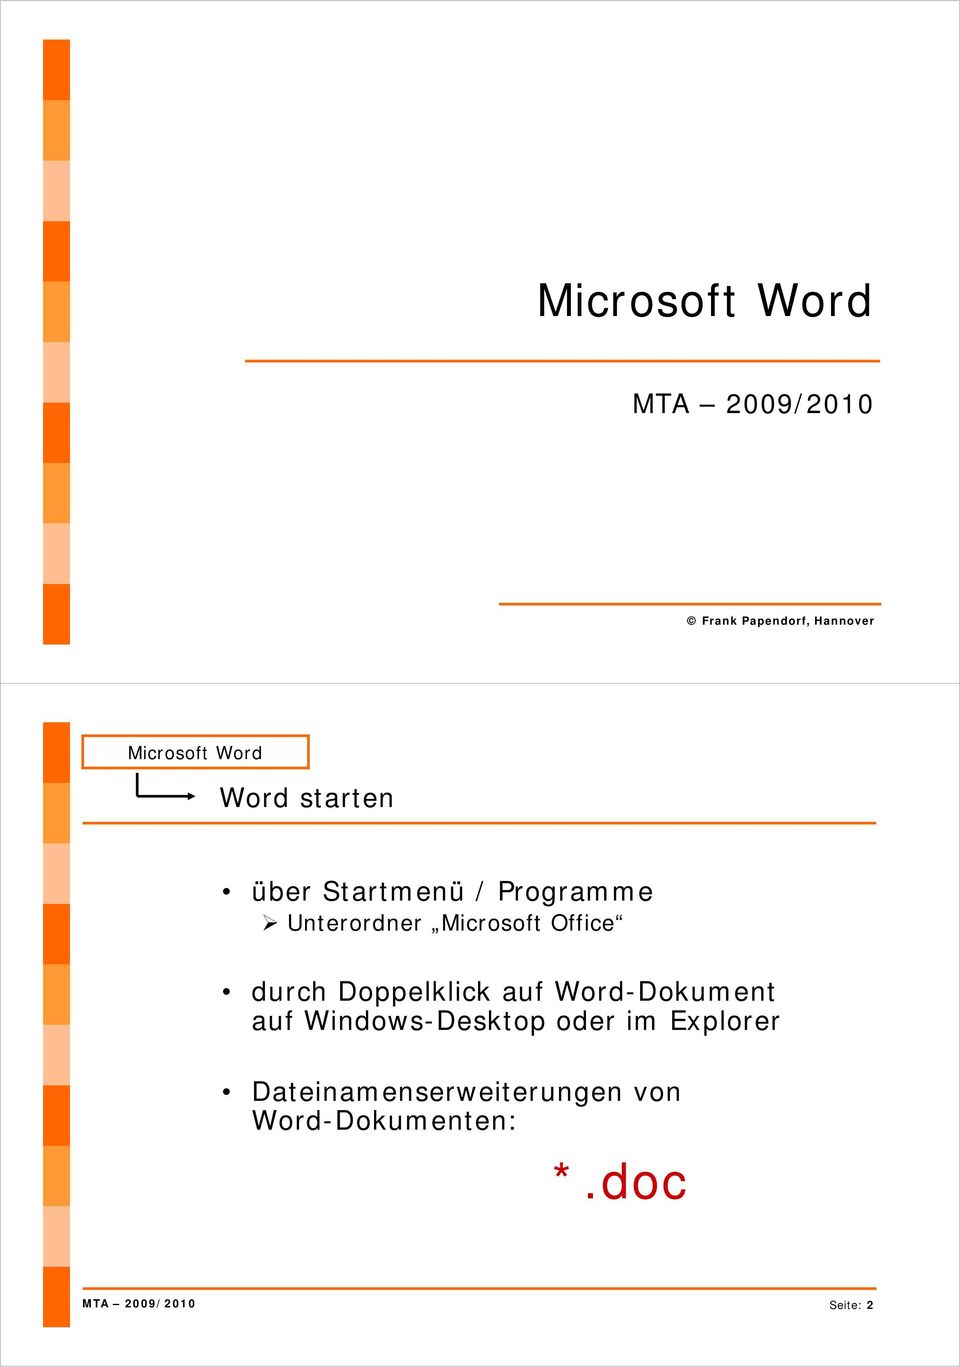 Doppelklick auf Word-Dokument auf Windows-Desktop oder im